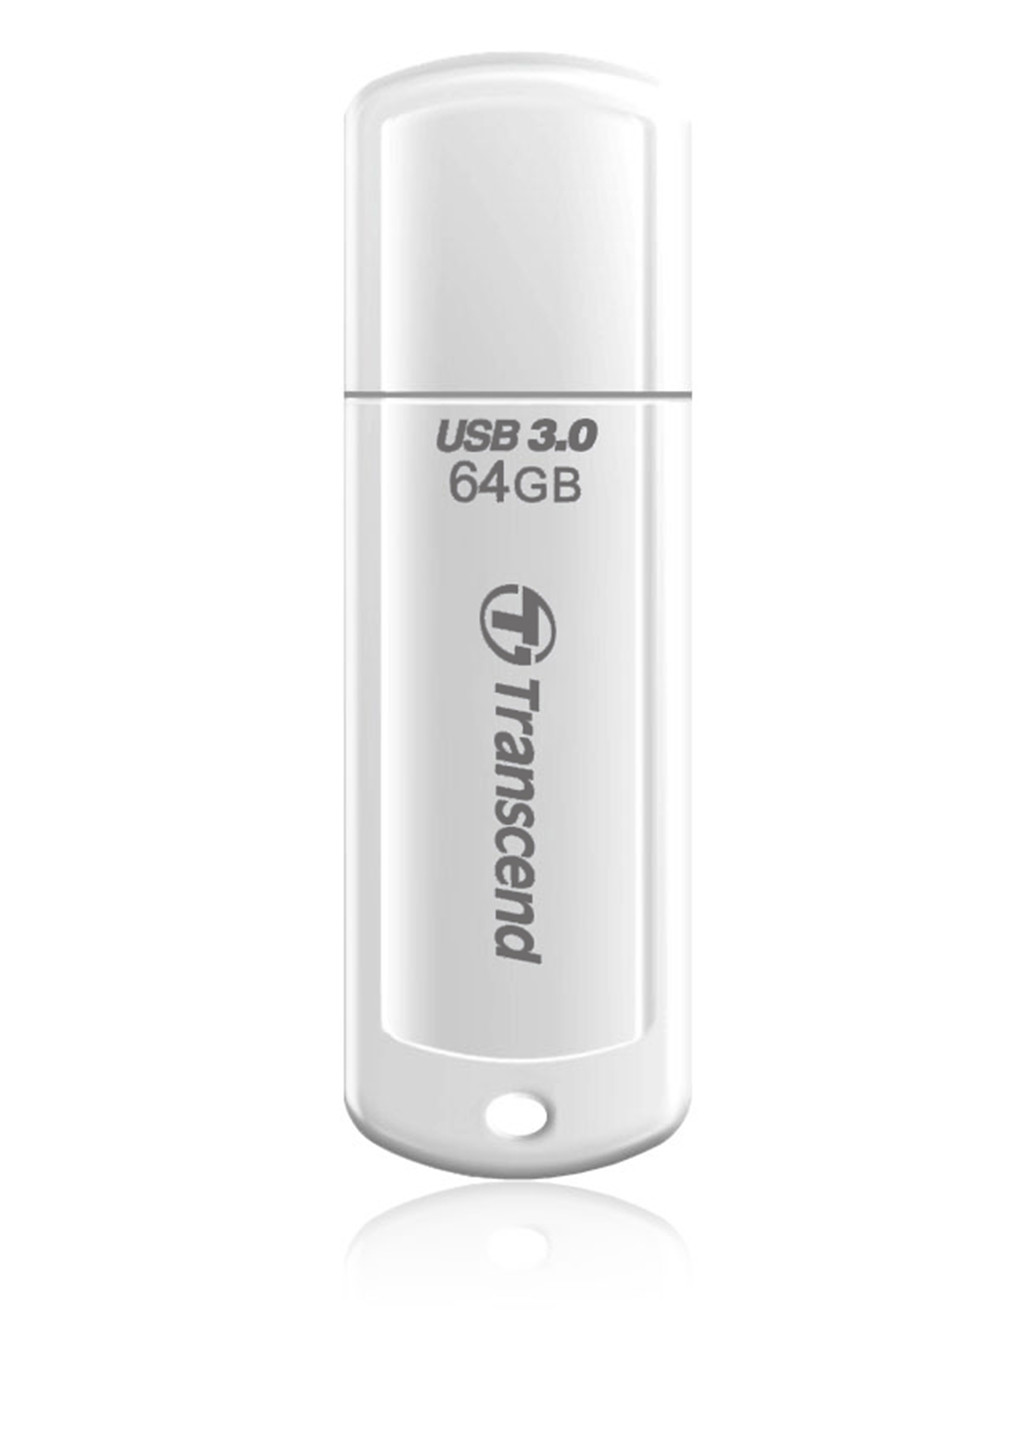 Флеш память USB JetFlash 730 64GB USB 3.0 White (TS64GJF730) Transcend Флеш память USB Transcend JetFlash 730 64GB USB 3.0 White (TS64GJF730) белые